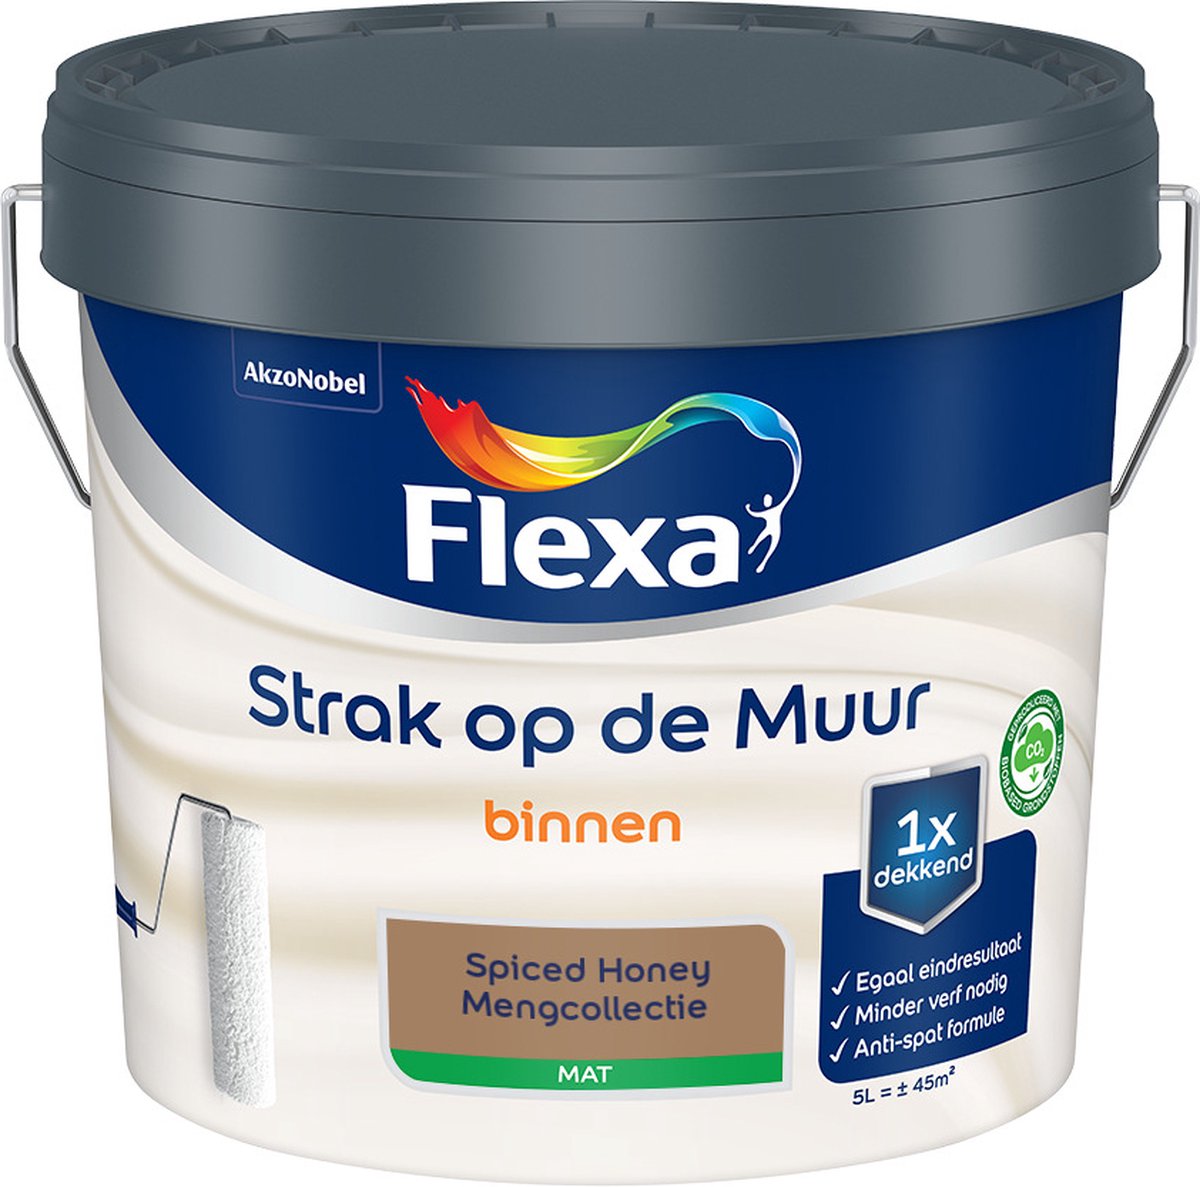 Flexa Strak op de muur - Muurverf - Mengcollectie - Spiced Honey - 5 Liter